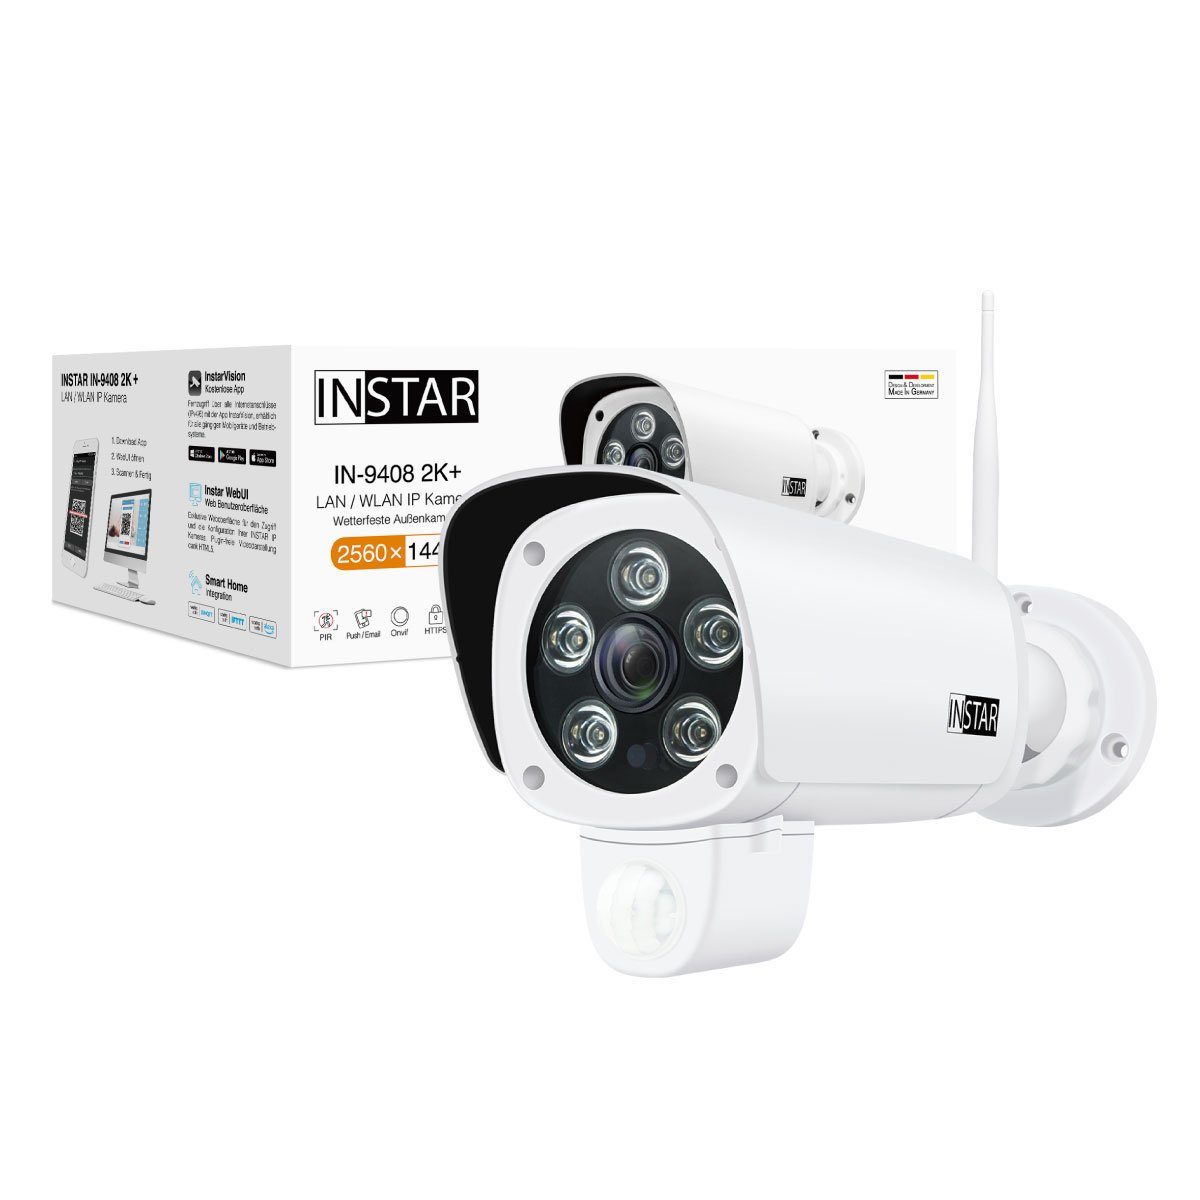 INSTAR IP Kamera IN-9408 2K+ (LAN / WLAN Version) mit AI IP-Überwachungskamera weiss